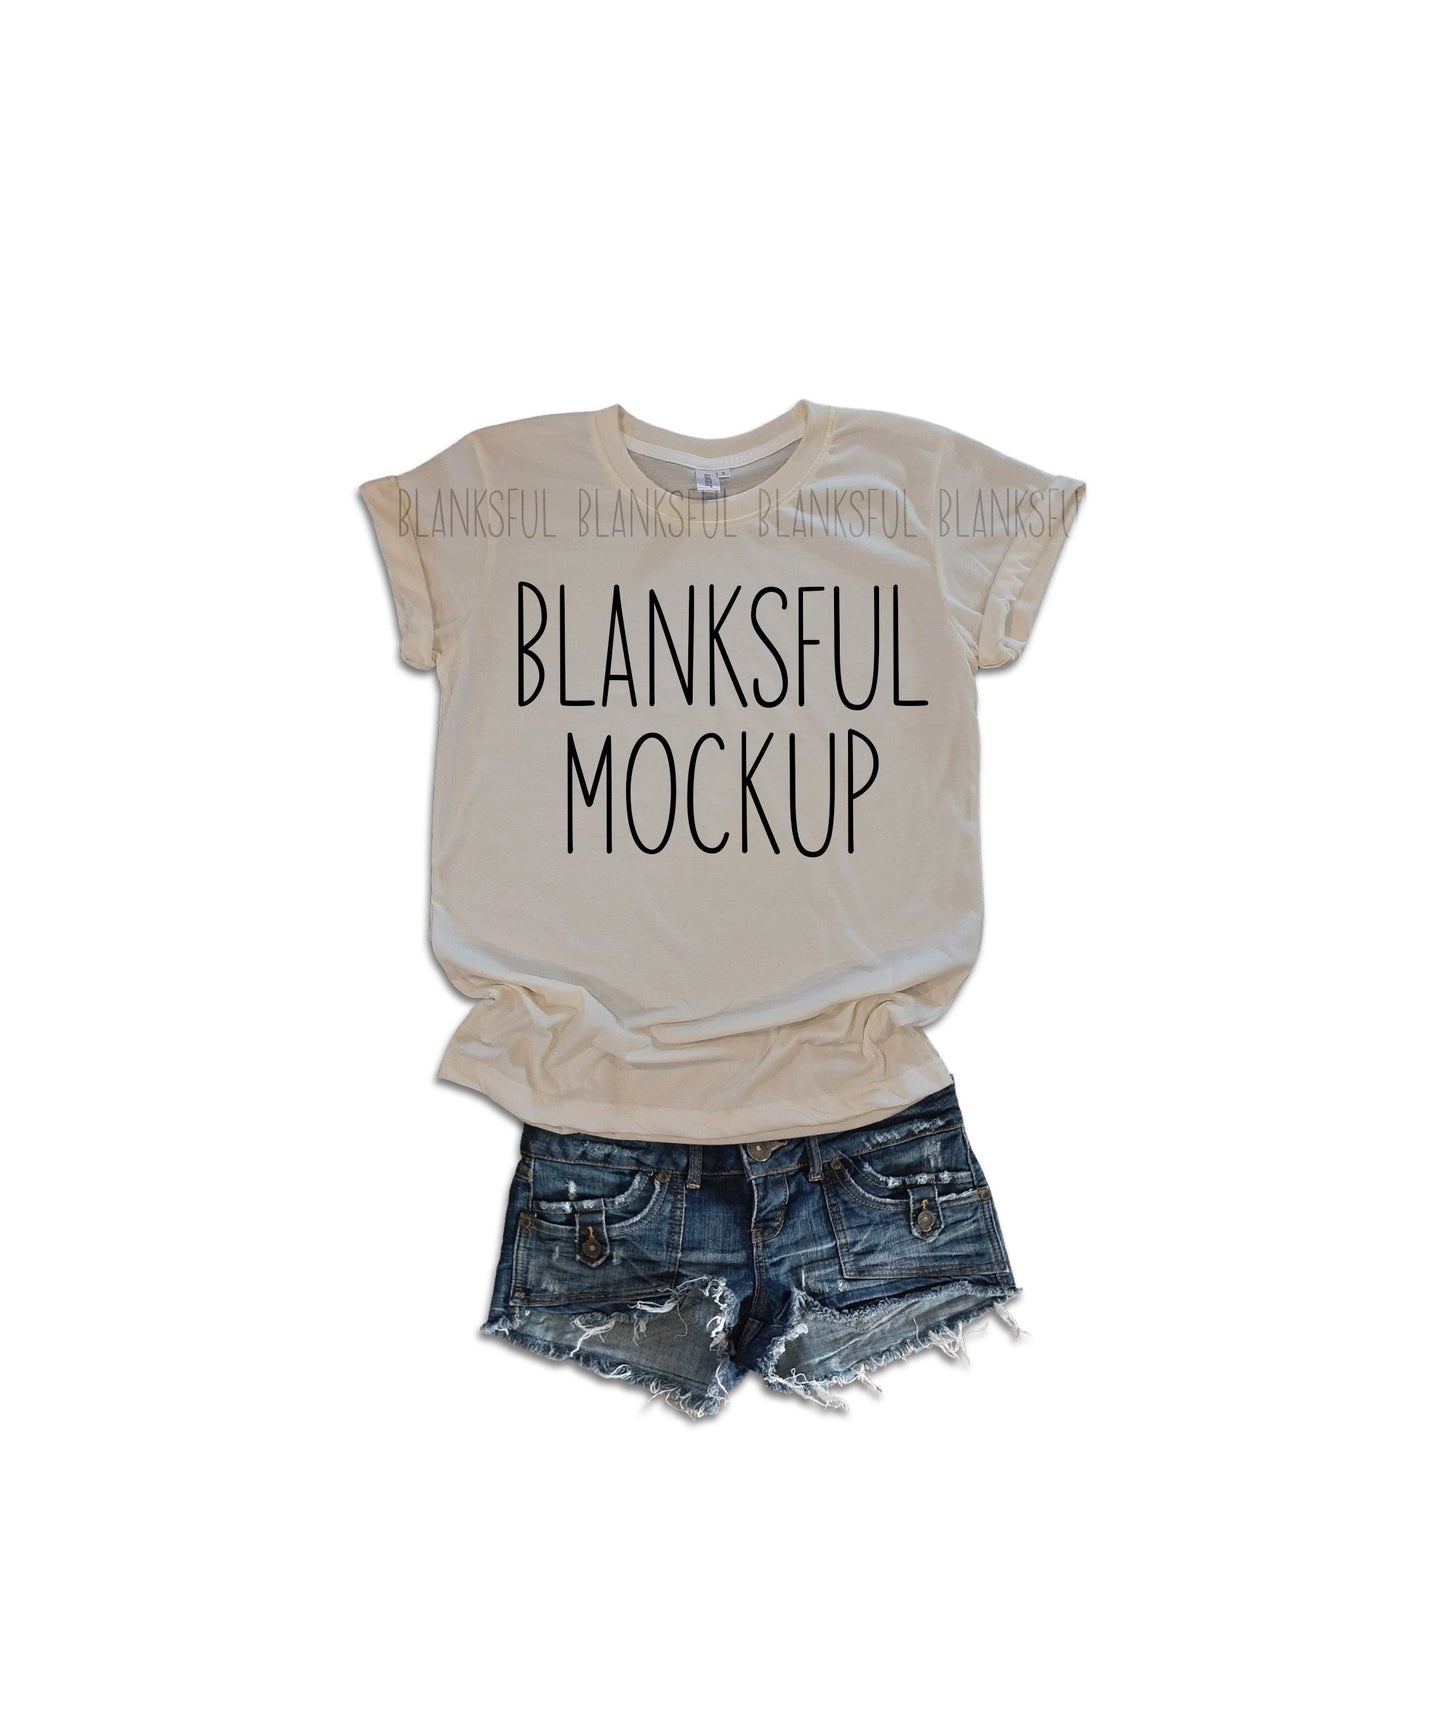 Blanksful Mockup Cream Adult Unisex Shirt - Shirt mockup - Mock up shirt - Flay Lay Mockup - Digital Download - Styled Mockup